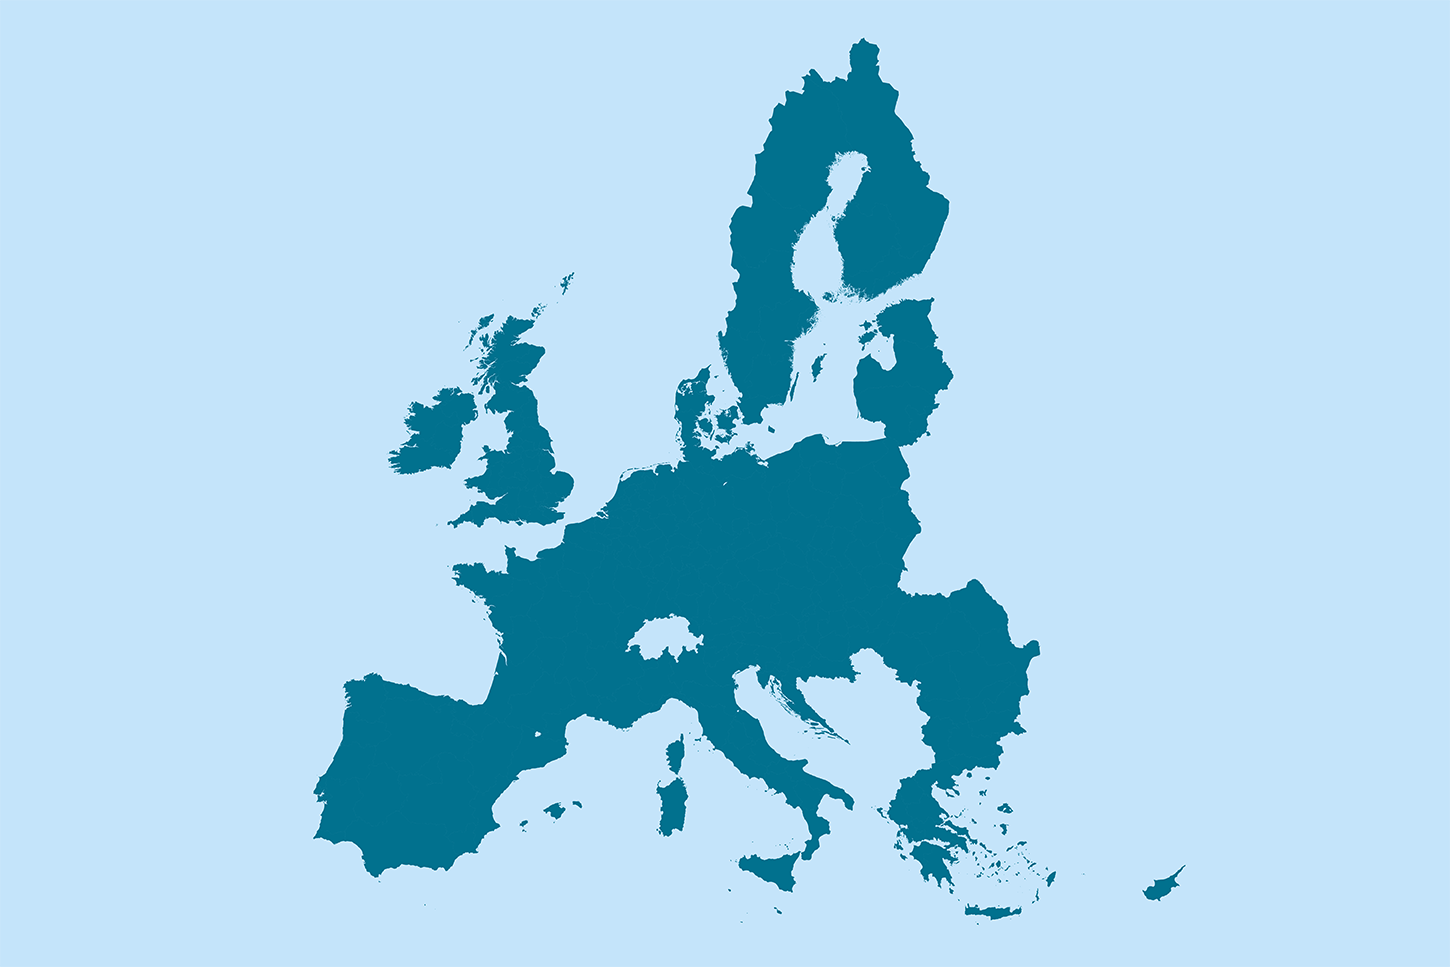 EU/UK Map Outline